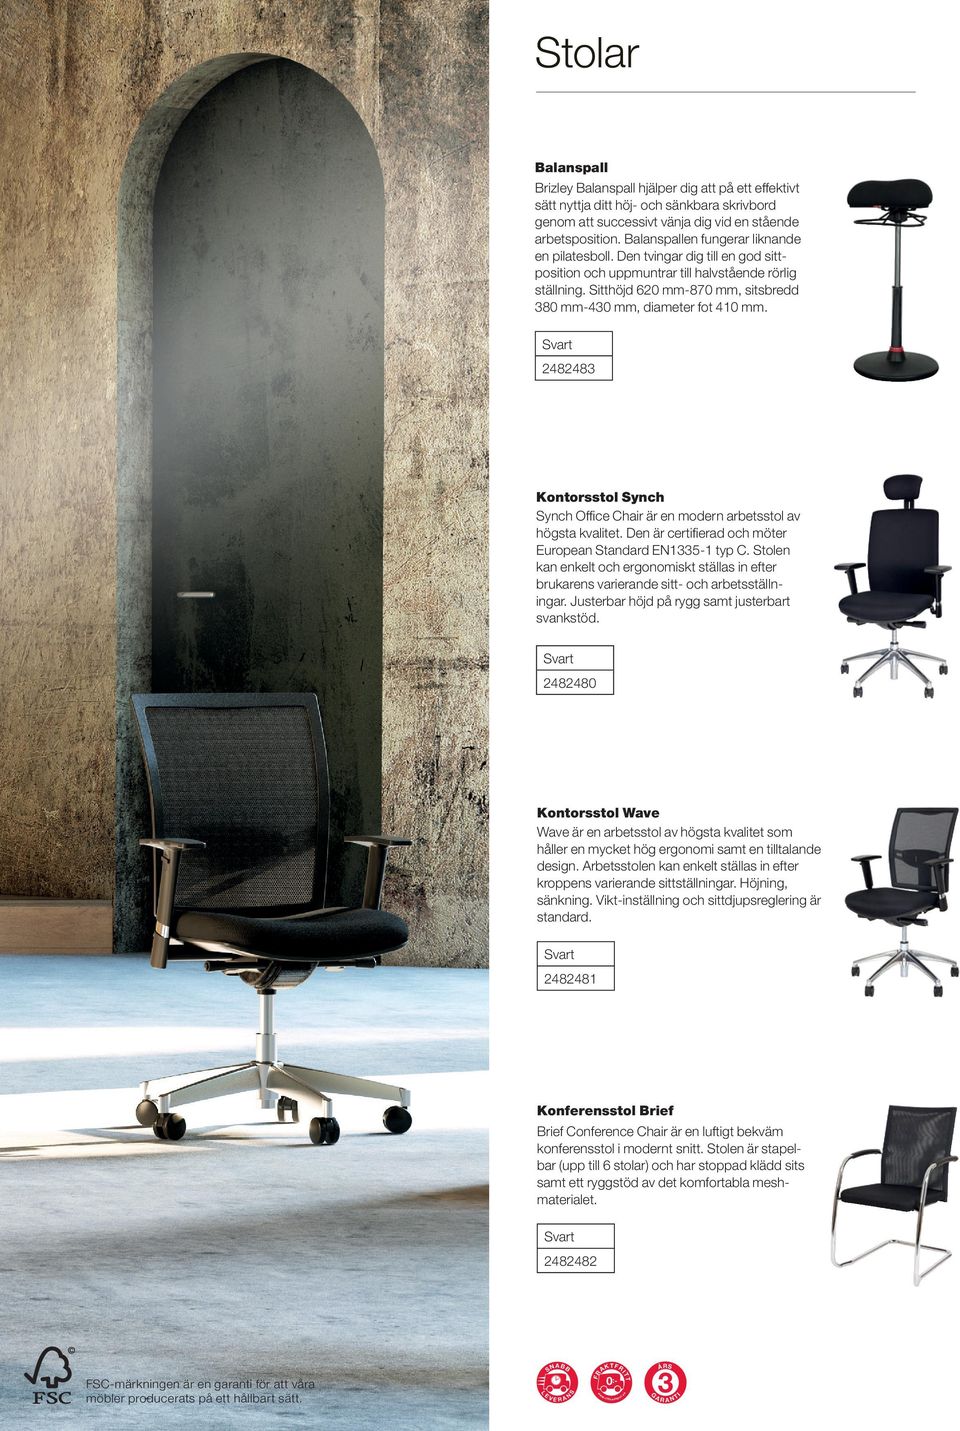 Sitthöjd 620 mm-870 mm, sitsbredd 380 mm-430 mm, diameter fot 410 mm. Svart 2482483 Kontorsstol Synch Synch Office Chair är en modern arbetsstol av högsta kvalitet.